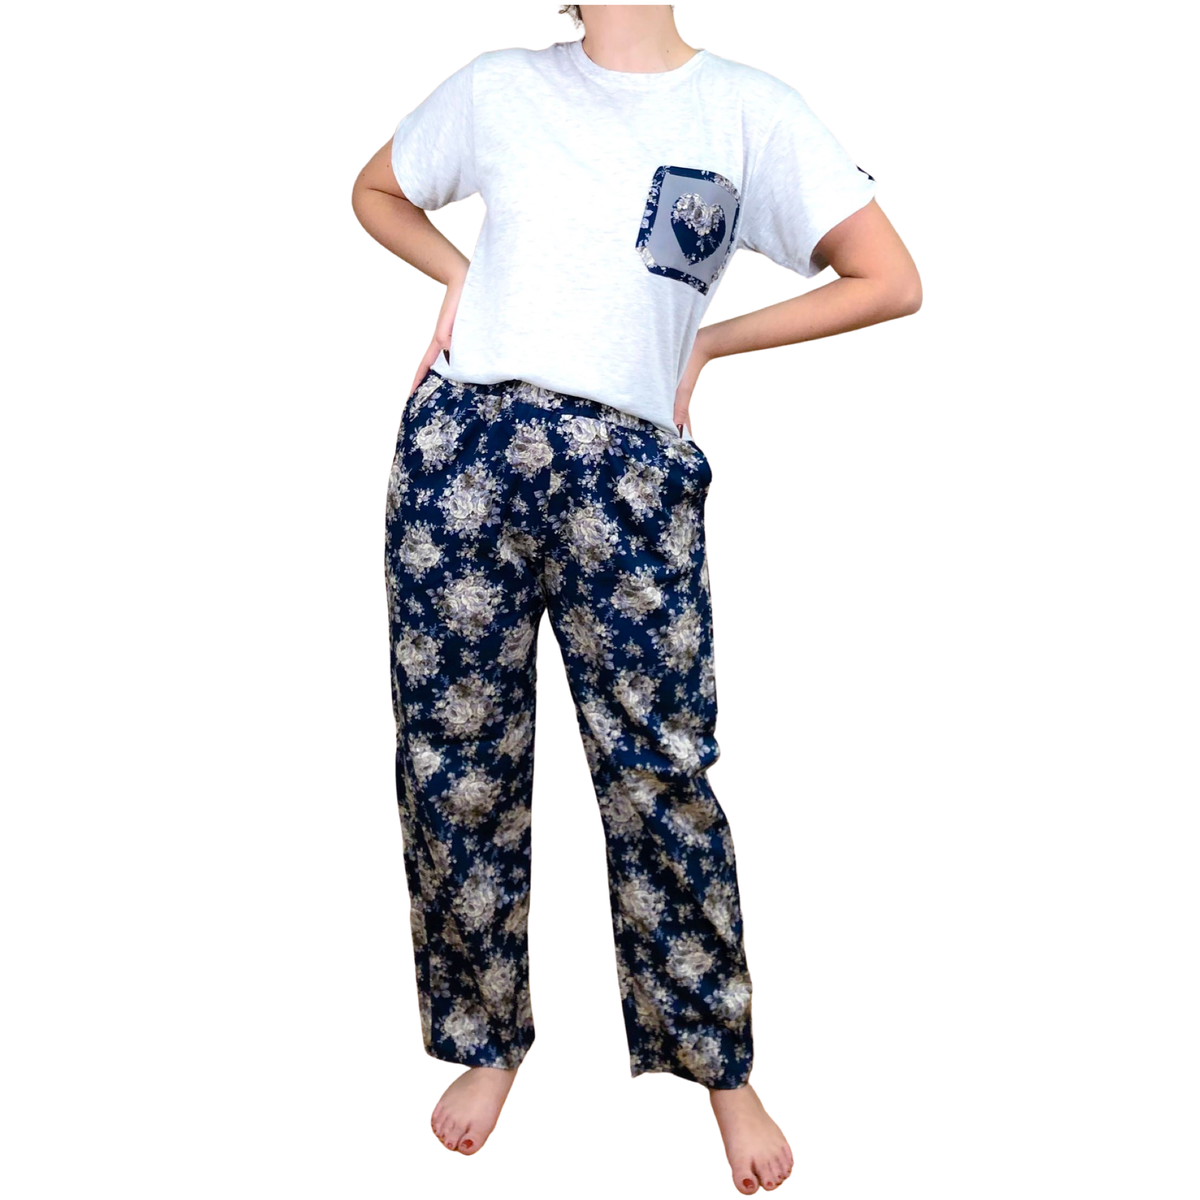 Sleep Time Pajama Kit